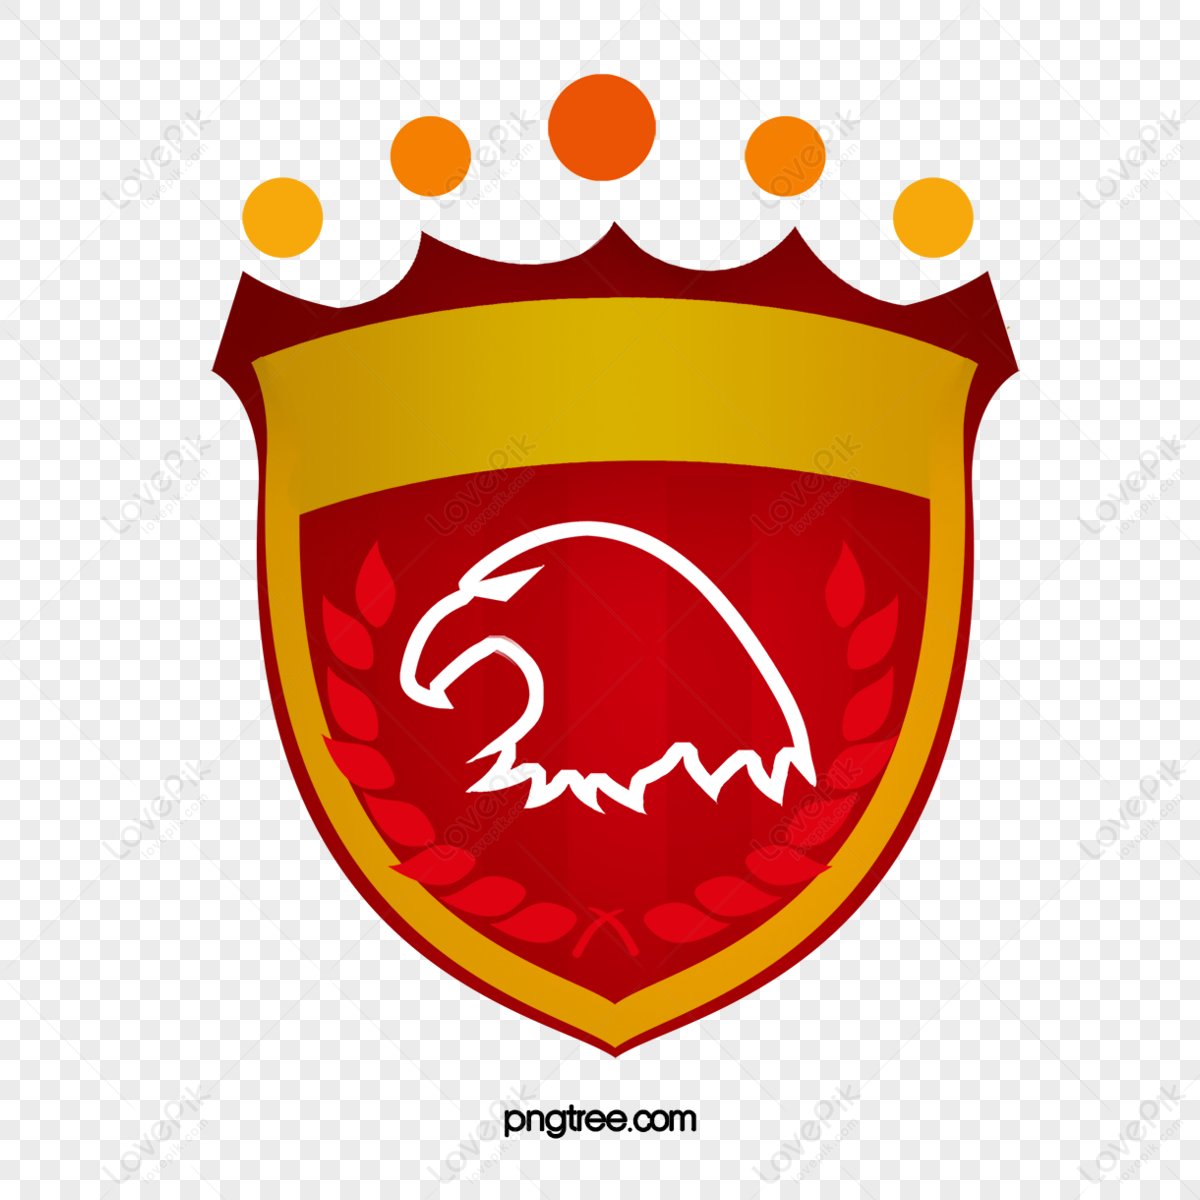 Premium Vector | Football club vector logo design template